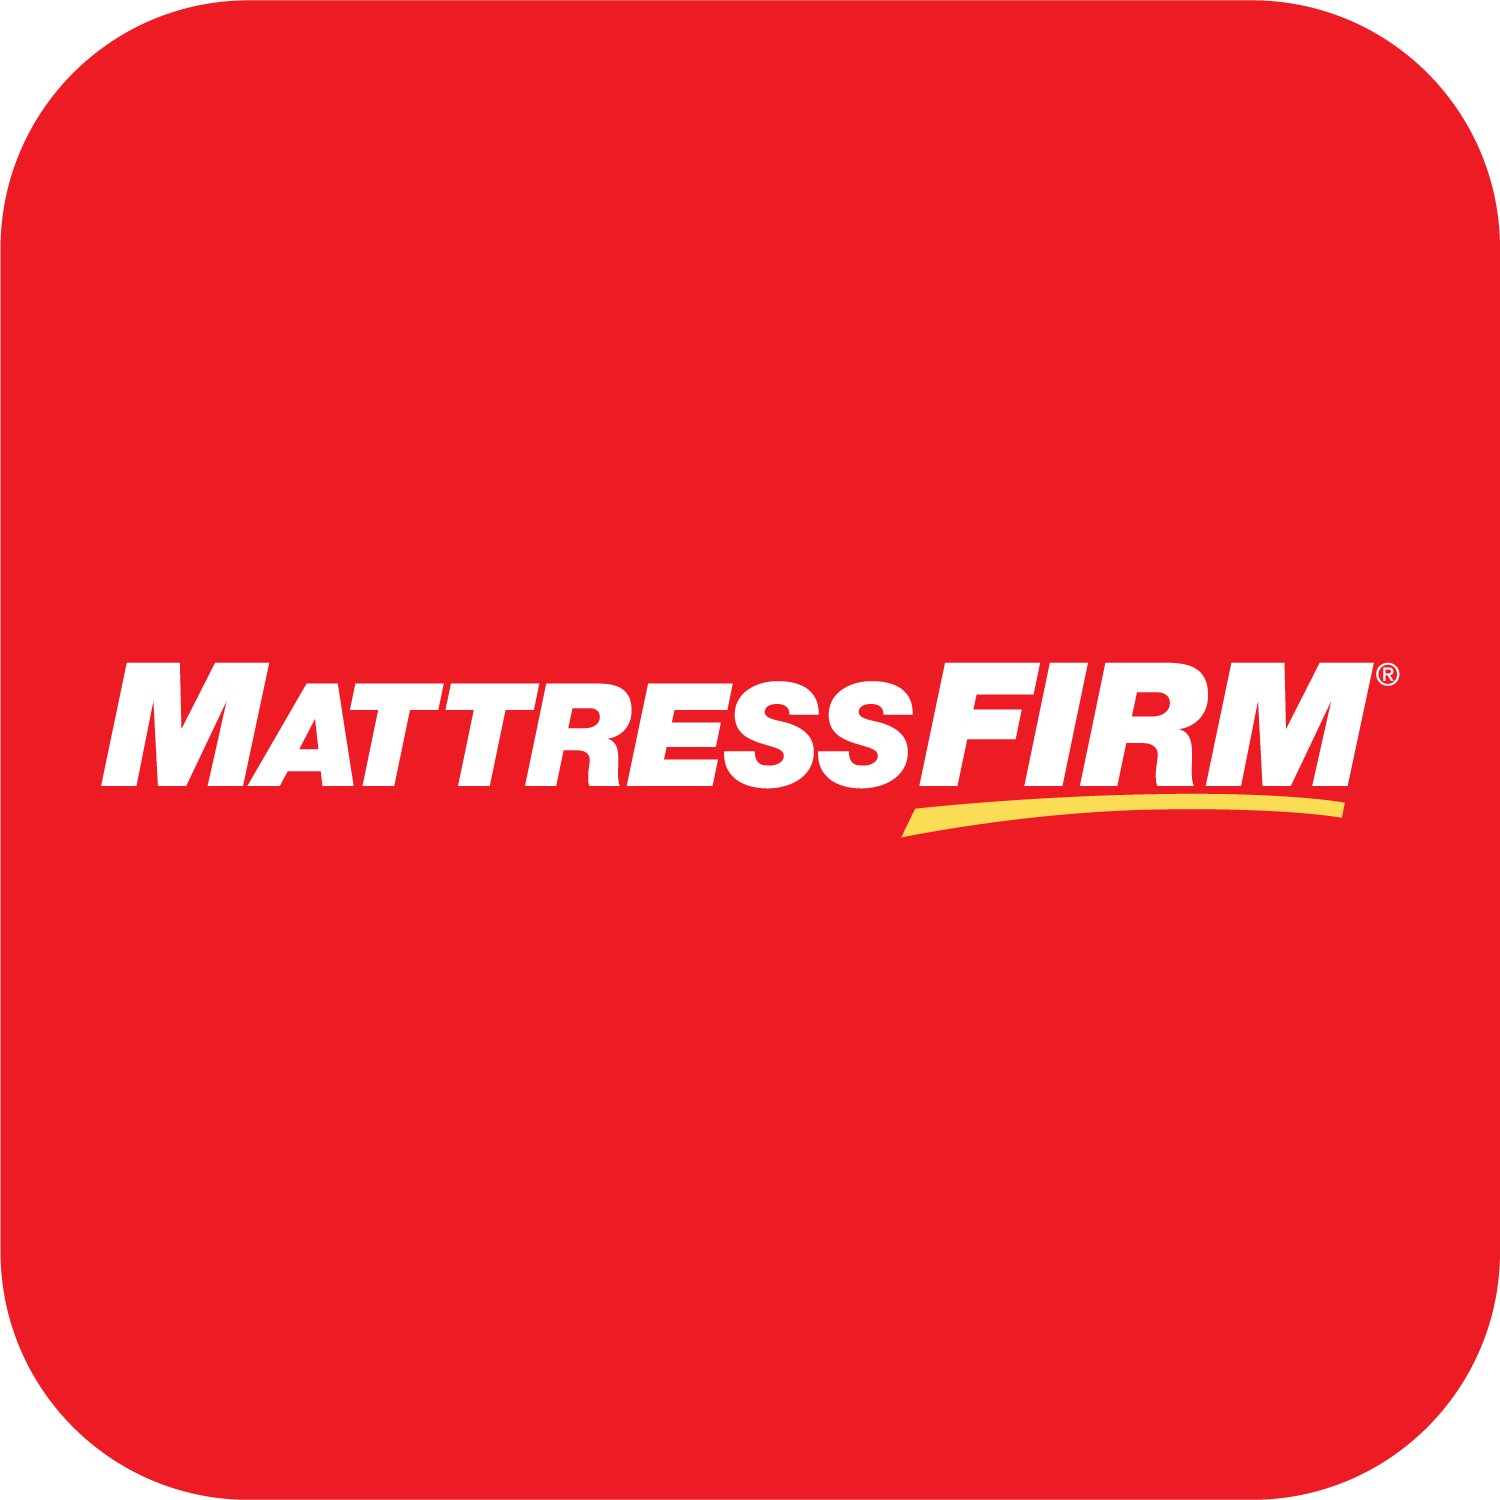 mattress firm logo colors